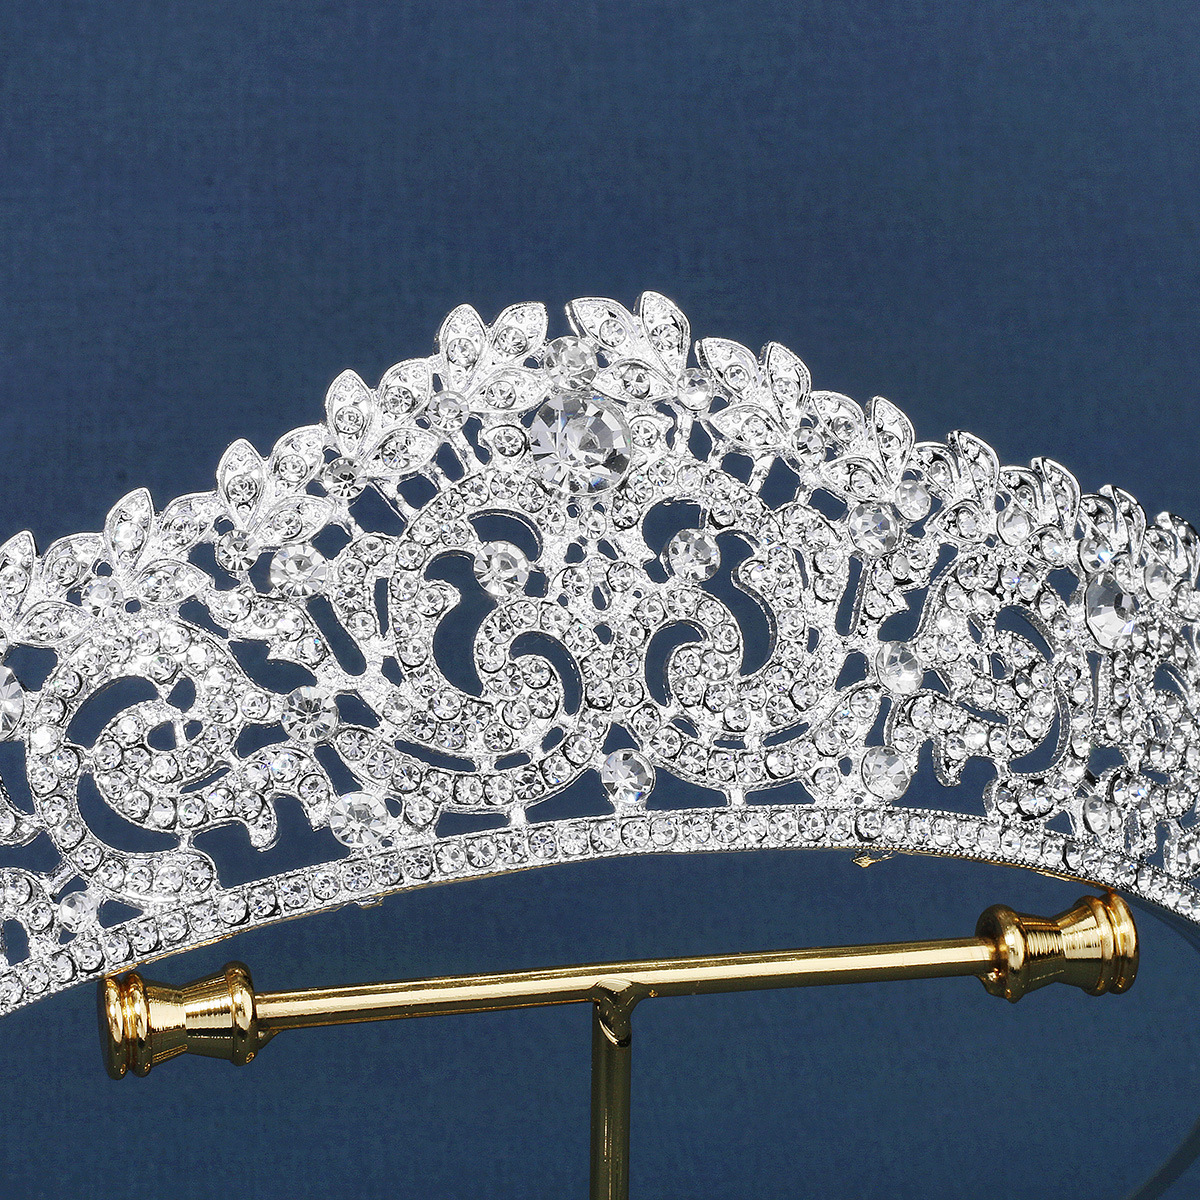 Shiny silver women's crown